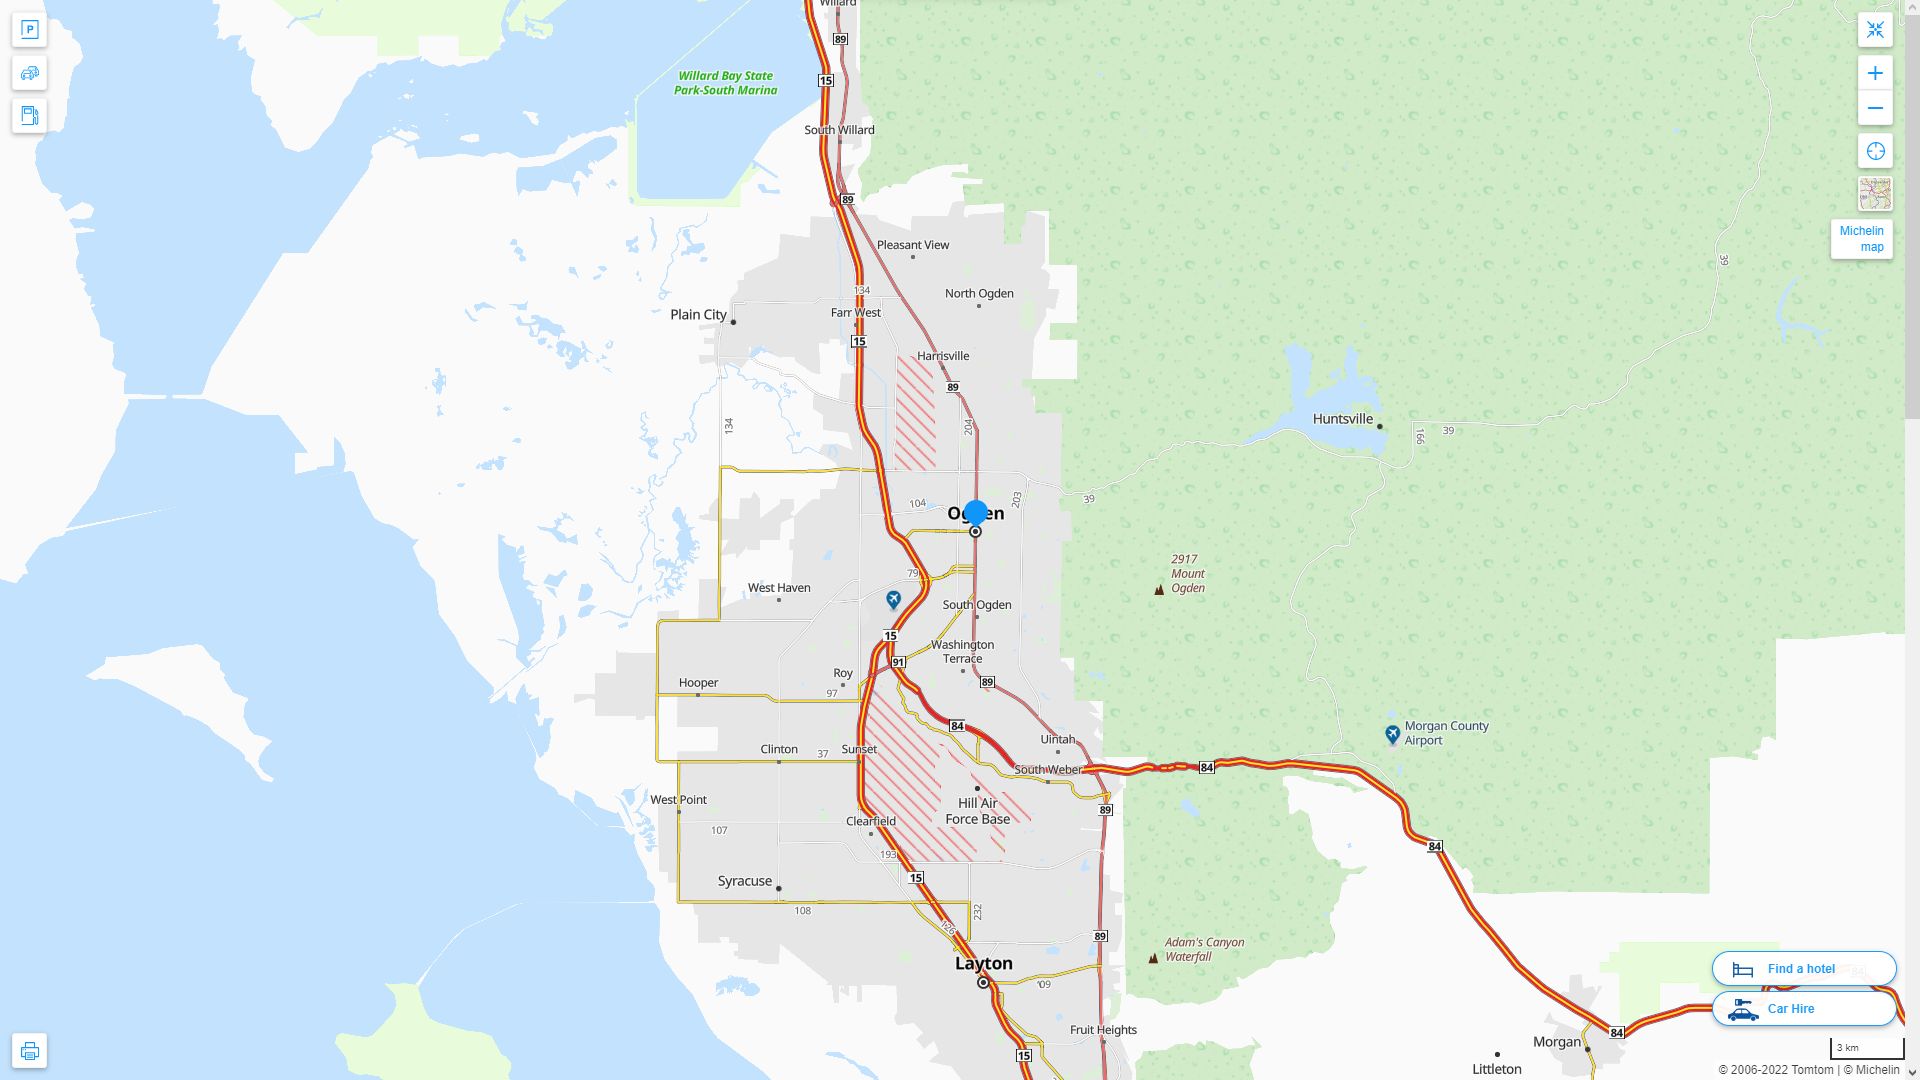 Ogden Utah Highway and Road Map